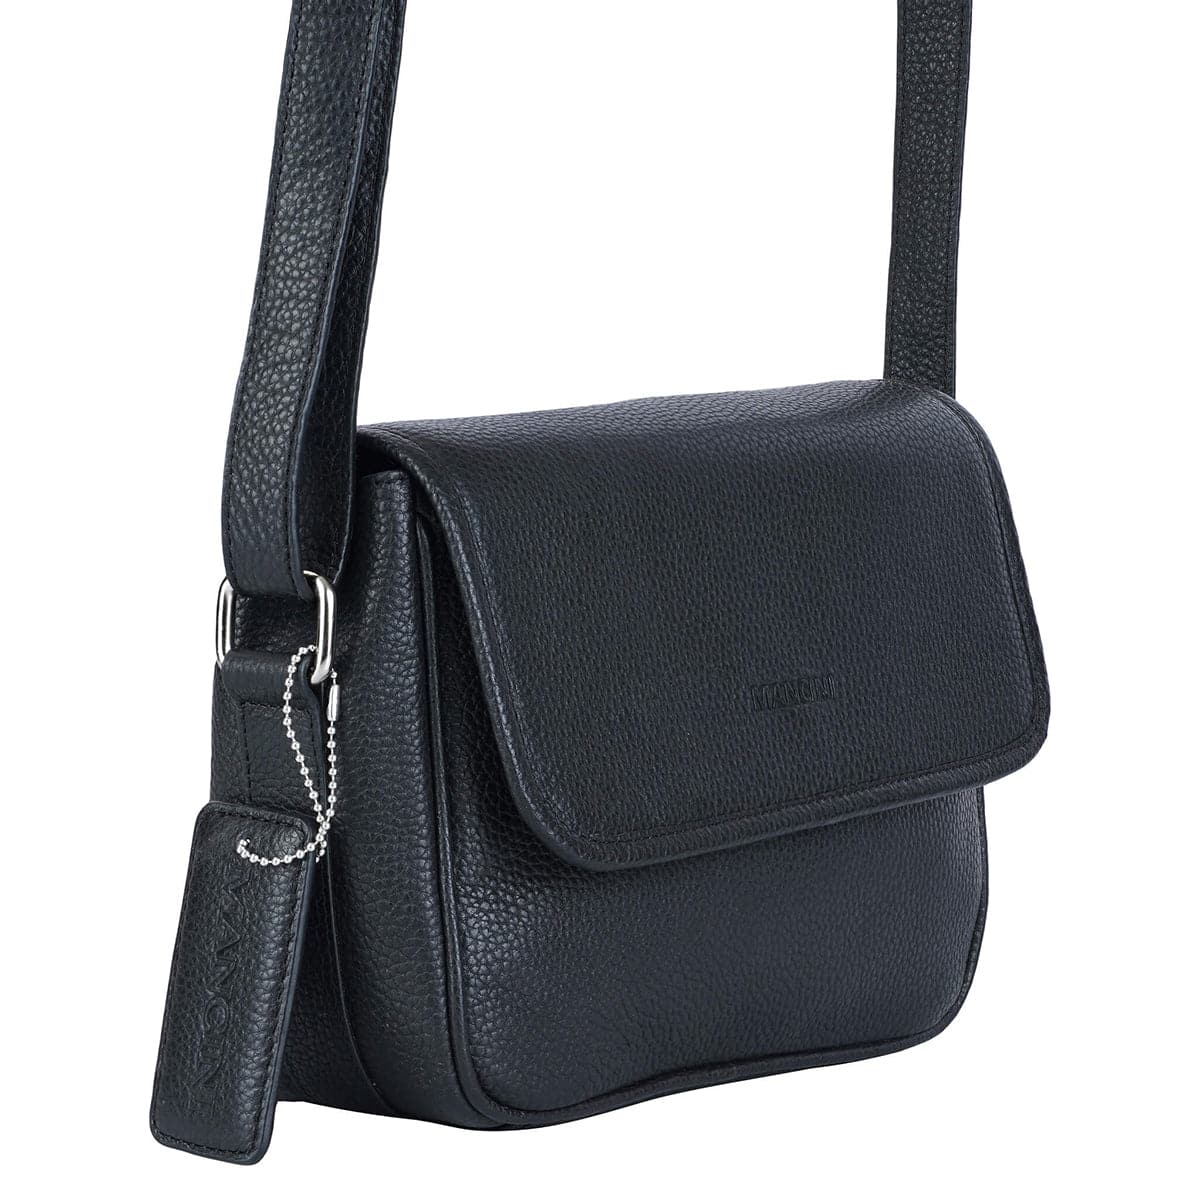 Mancini Pebbled Kimberly Flap Closure Handbag